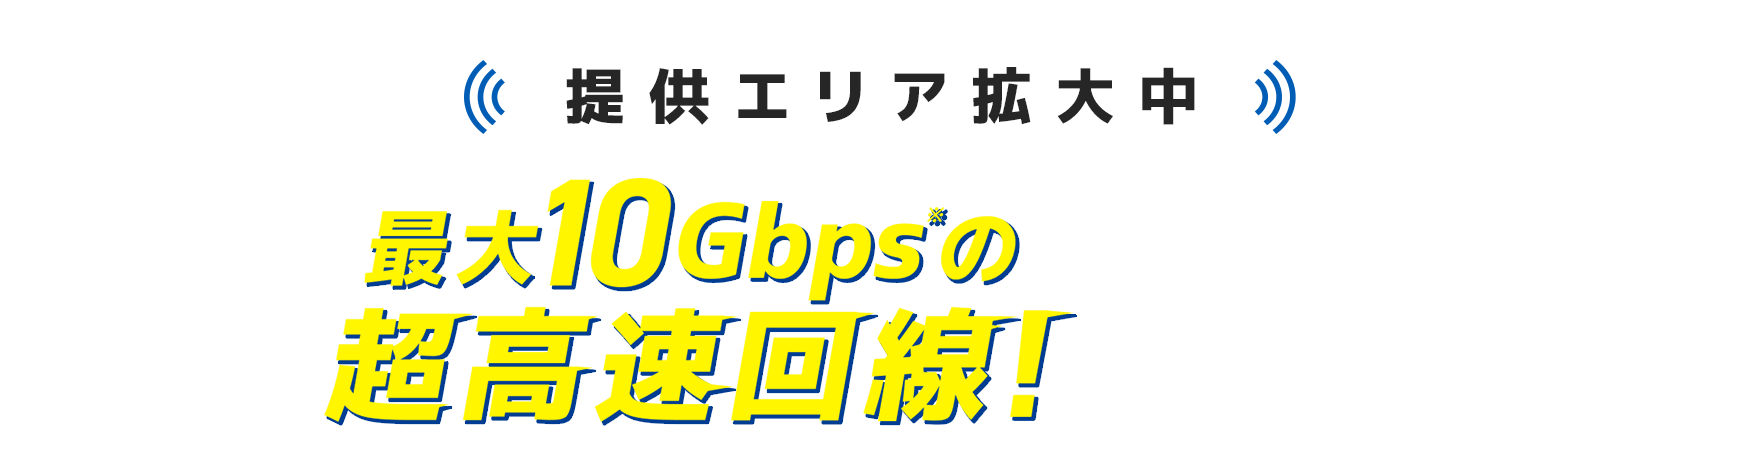 【提供エリア拡大中】最大10Gbps※の超高速回線！